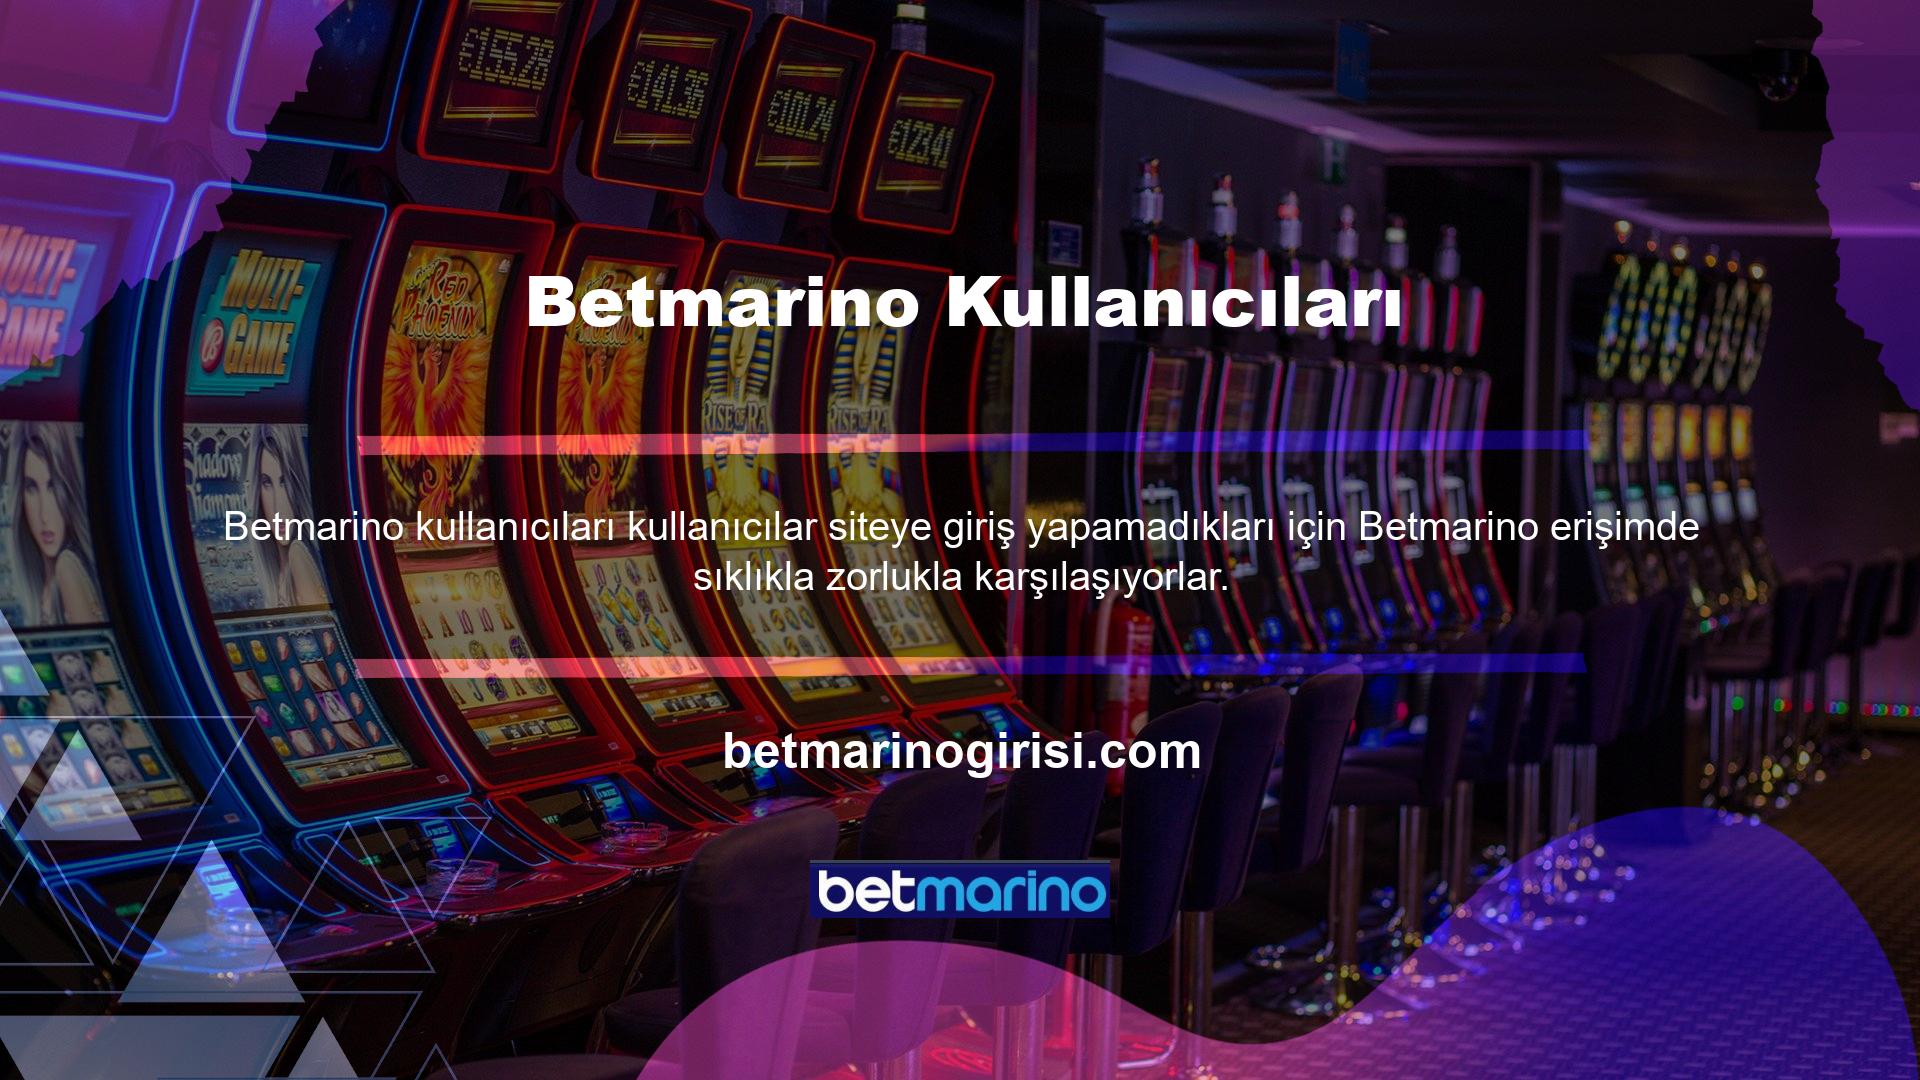 Betmarino, günün veya gecenin her saatinde karşılaşabileceğiniz her türlü sorunda size yardımcı olmaya hazır